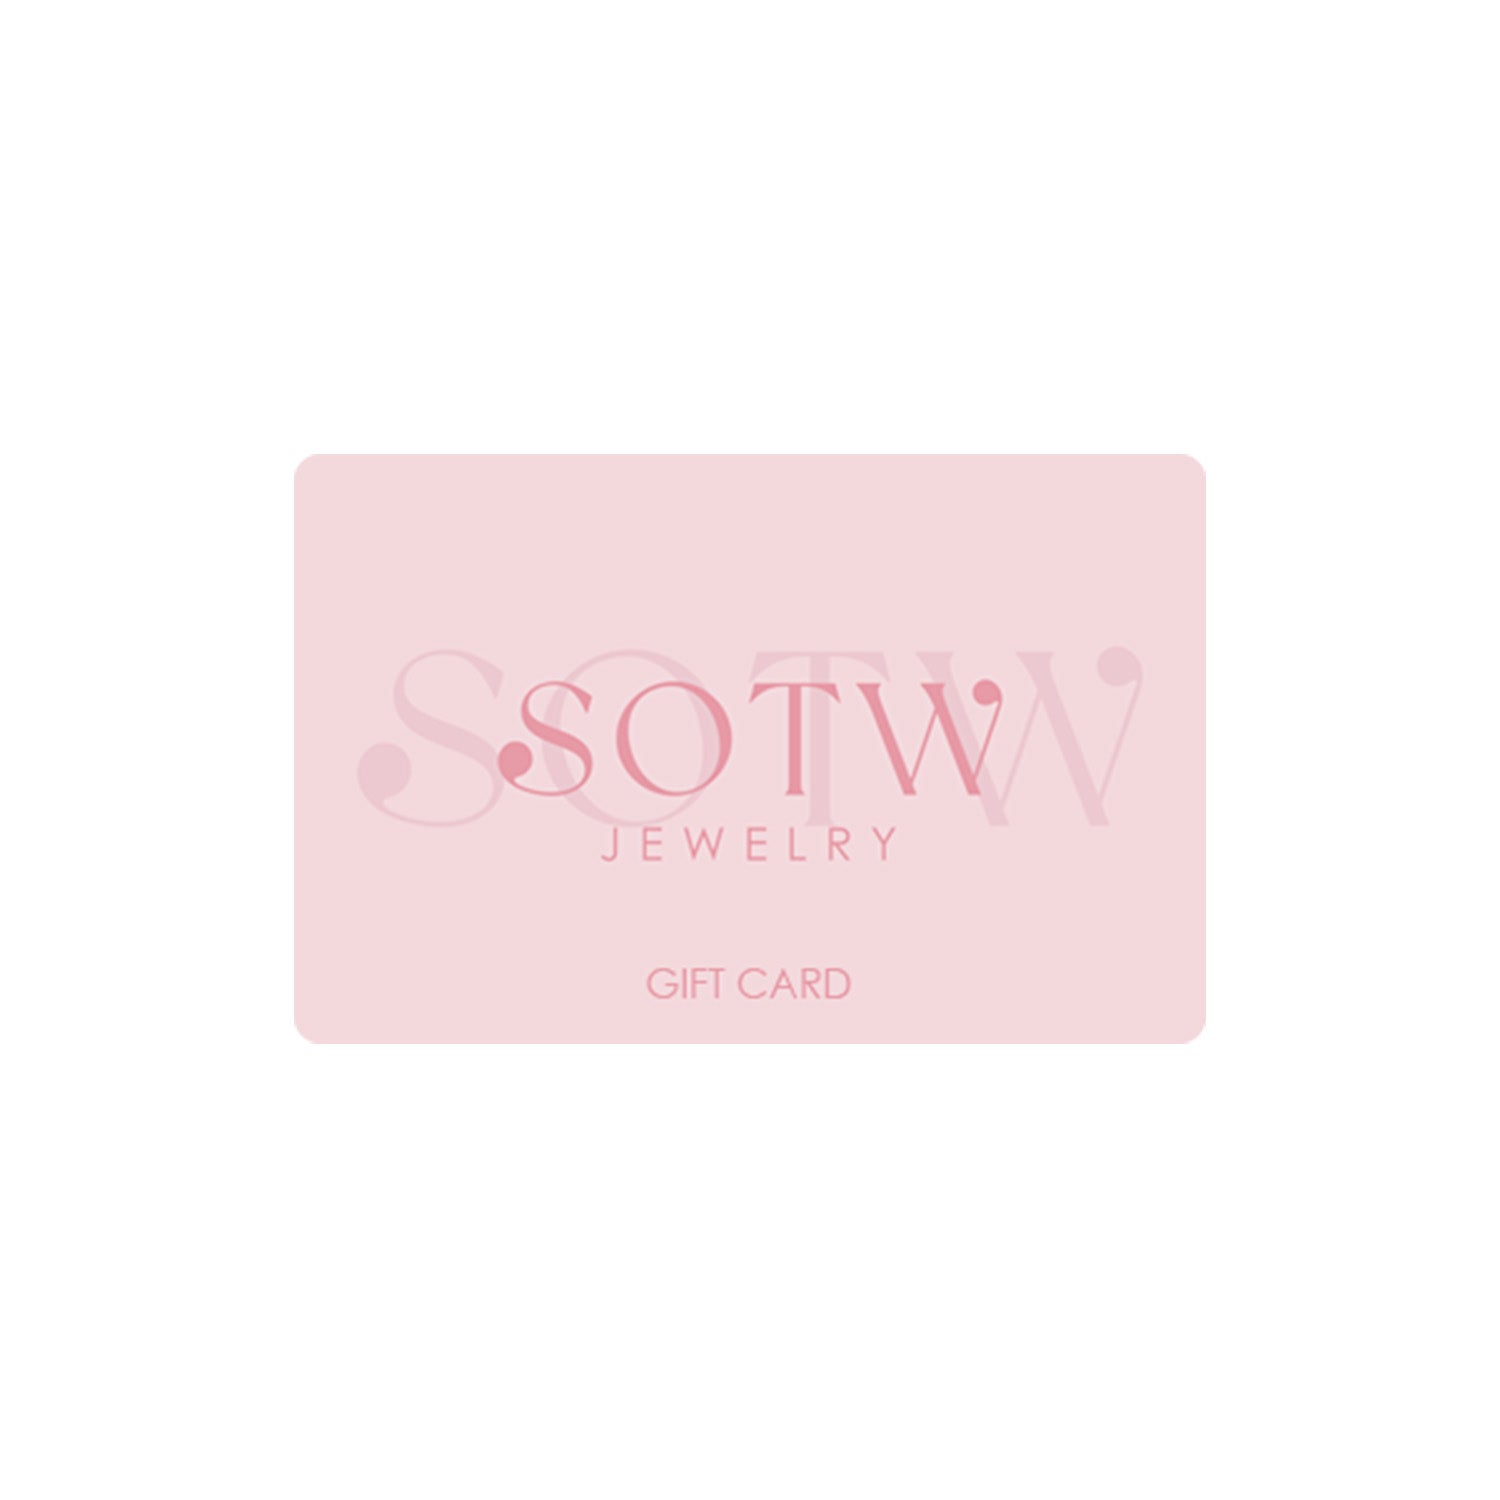 SOTW Digital Gift Card